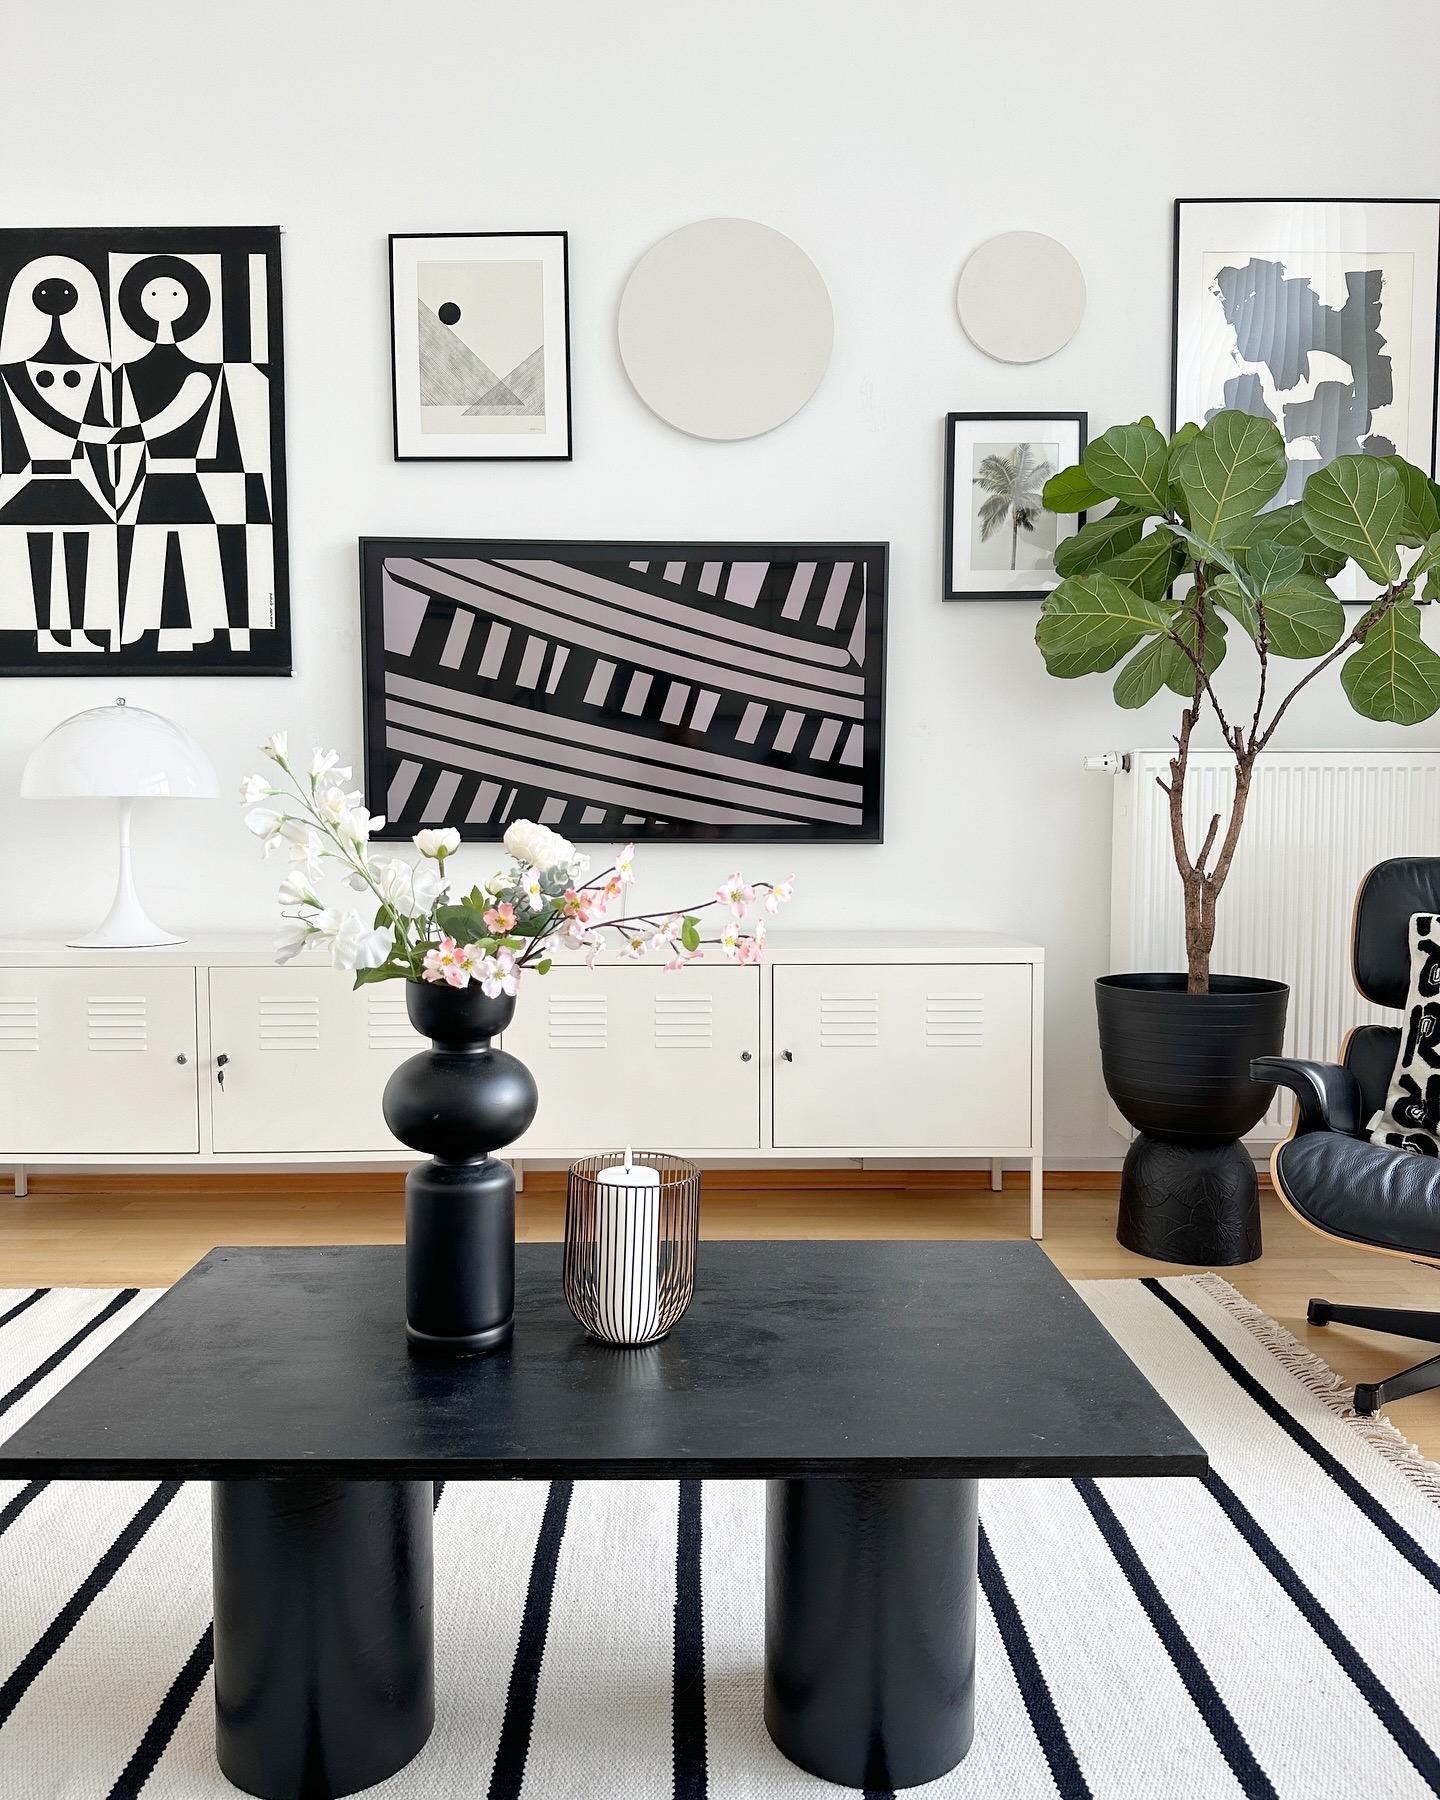 DIY Papprollen Tisch 🖤 #upcycling #diy #wohnen #wohnzimmer #diyidee #bilderwand #diytopf #diybild #diyvase